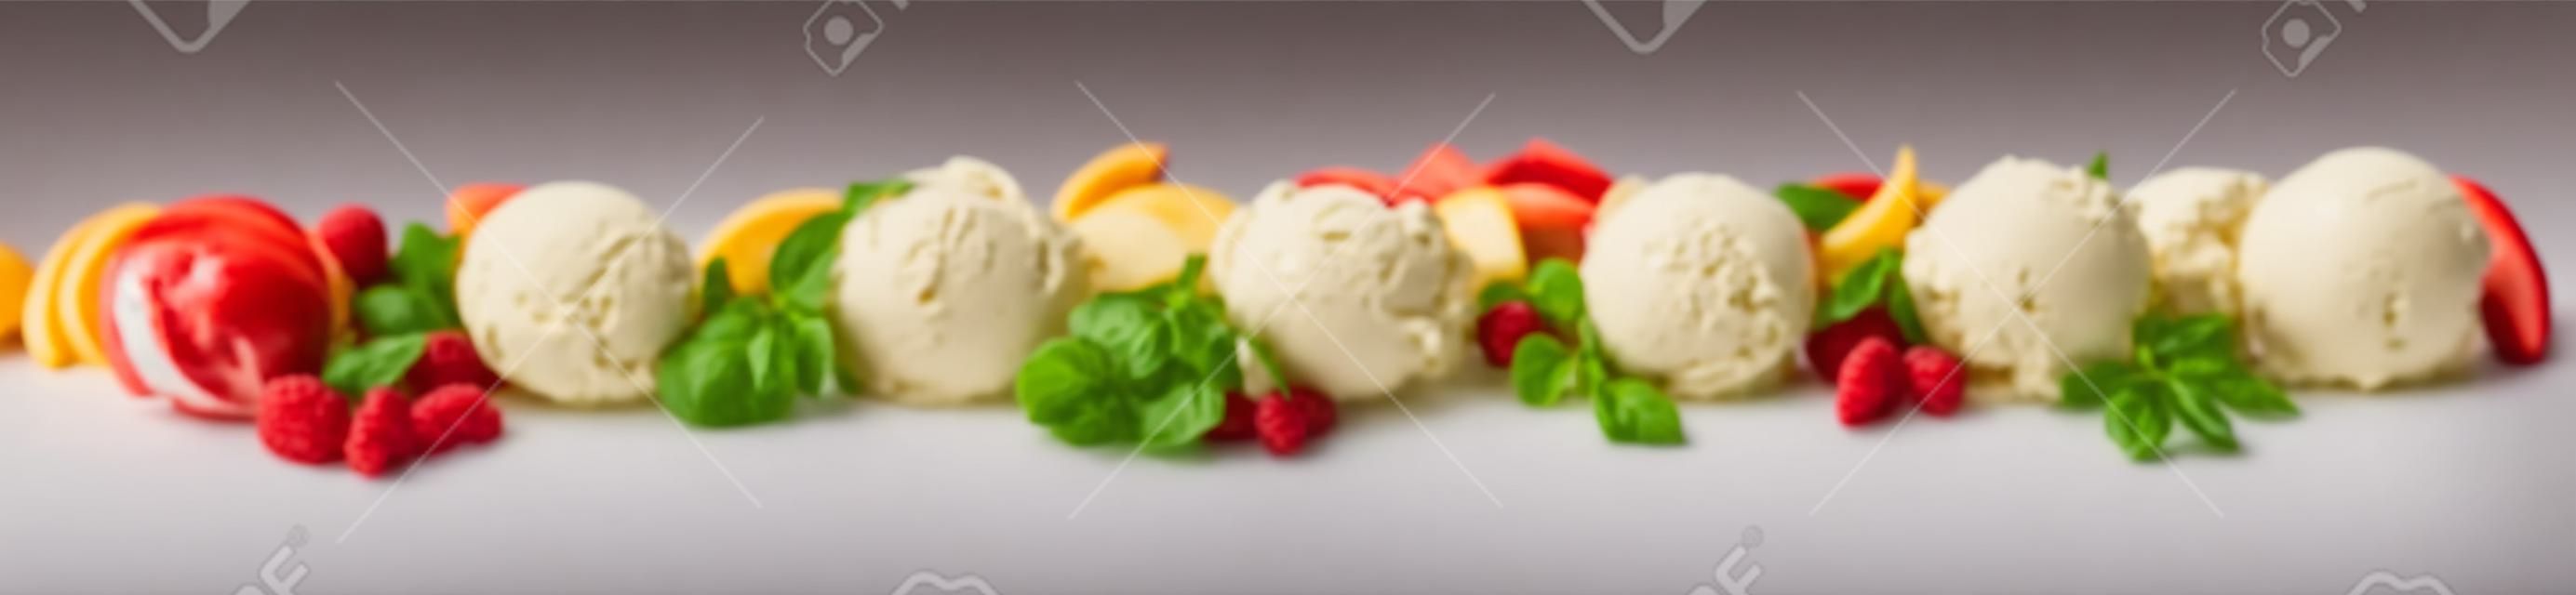 Breites Panoramabanner mit einer Vielzahl italienischer Eisdesserts mit verschiedenen Fruchtaromen, Vanille, Schokolade und Mandeln, die als Reihe von Kugeln mit frischen Zutaten auf Weiß angezeigt werden